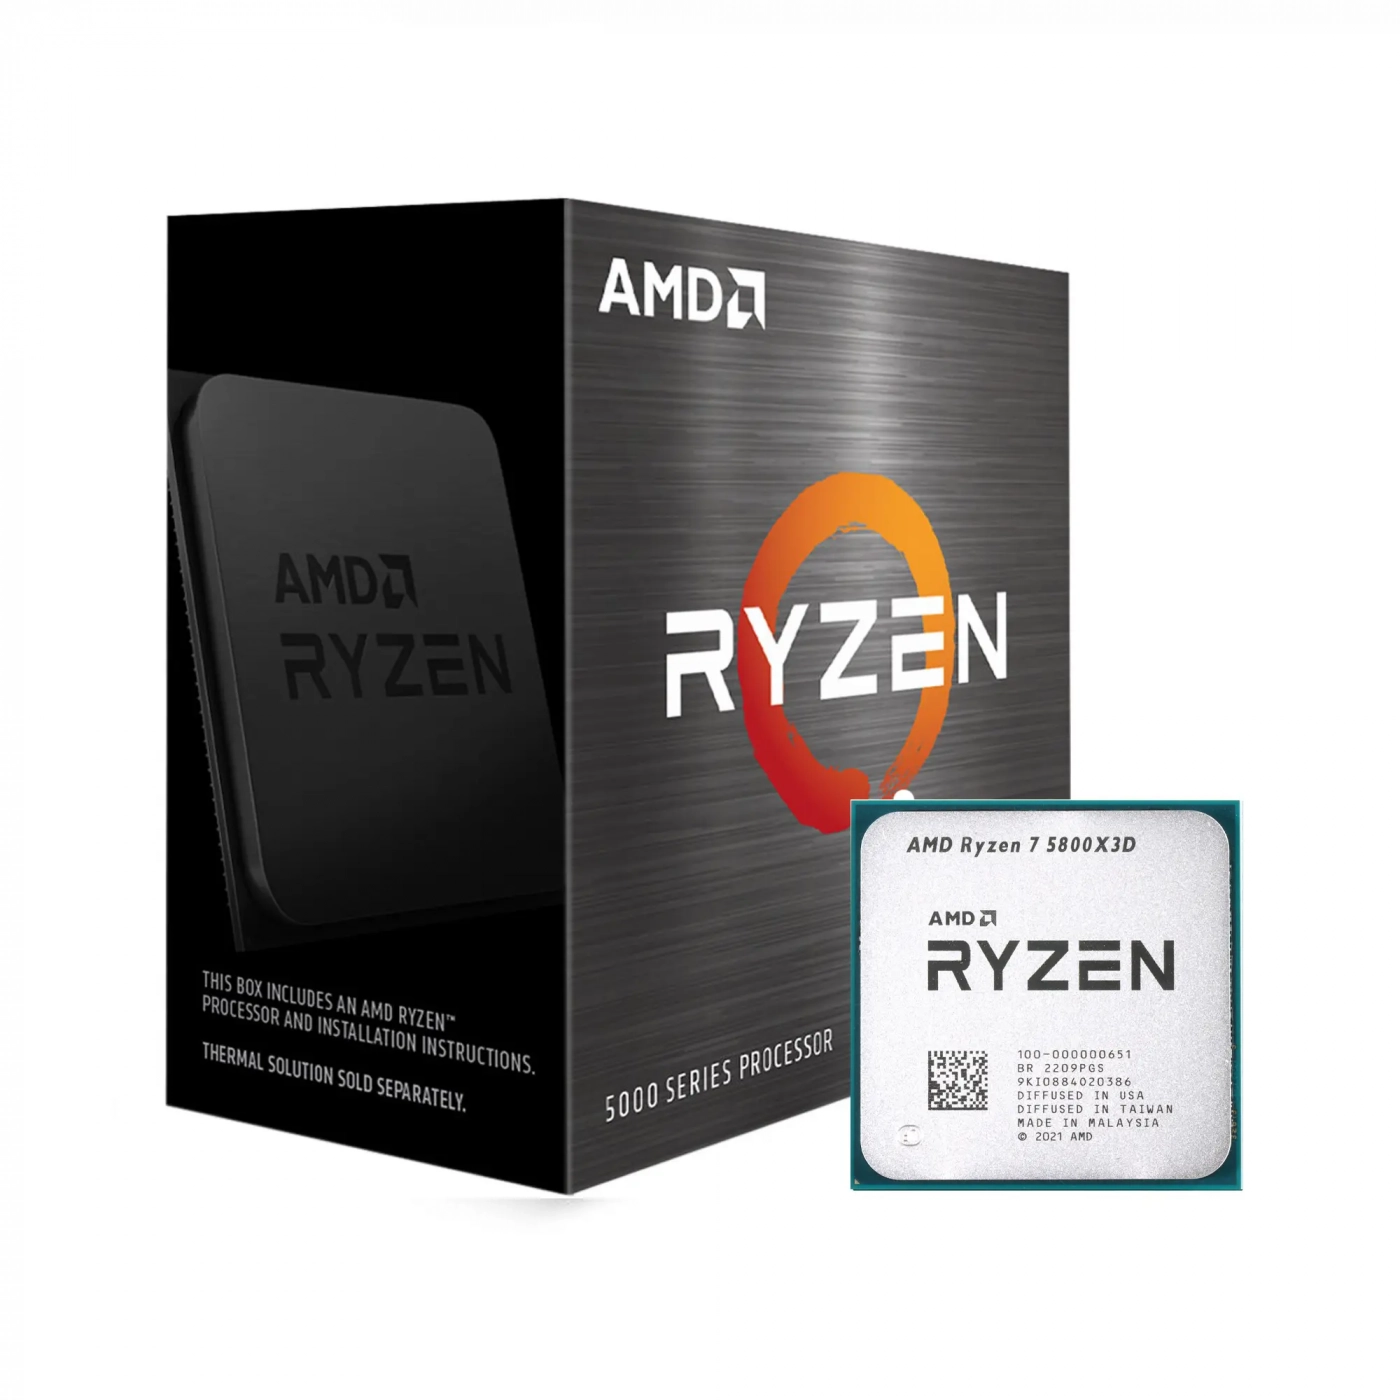 Купить Процессор AMD Ryzen 7 5800X3D (8C/16T, 3.4-4.5GHz, 96MB,105W,AM4) BOX - фото 1